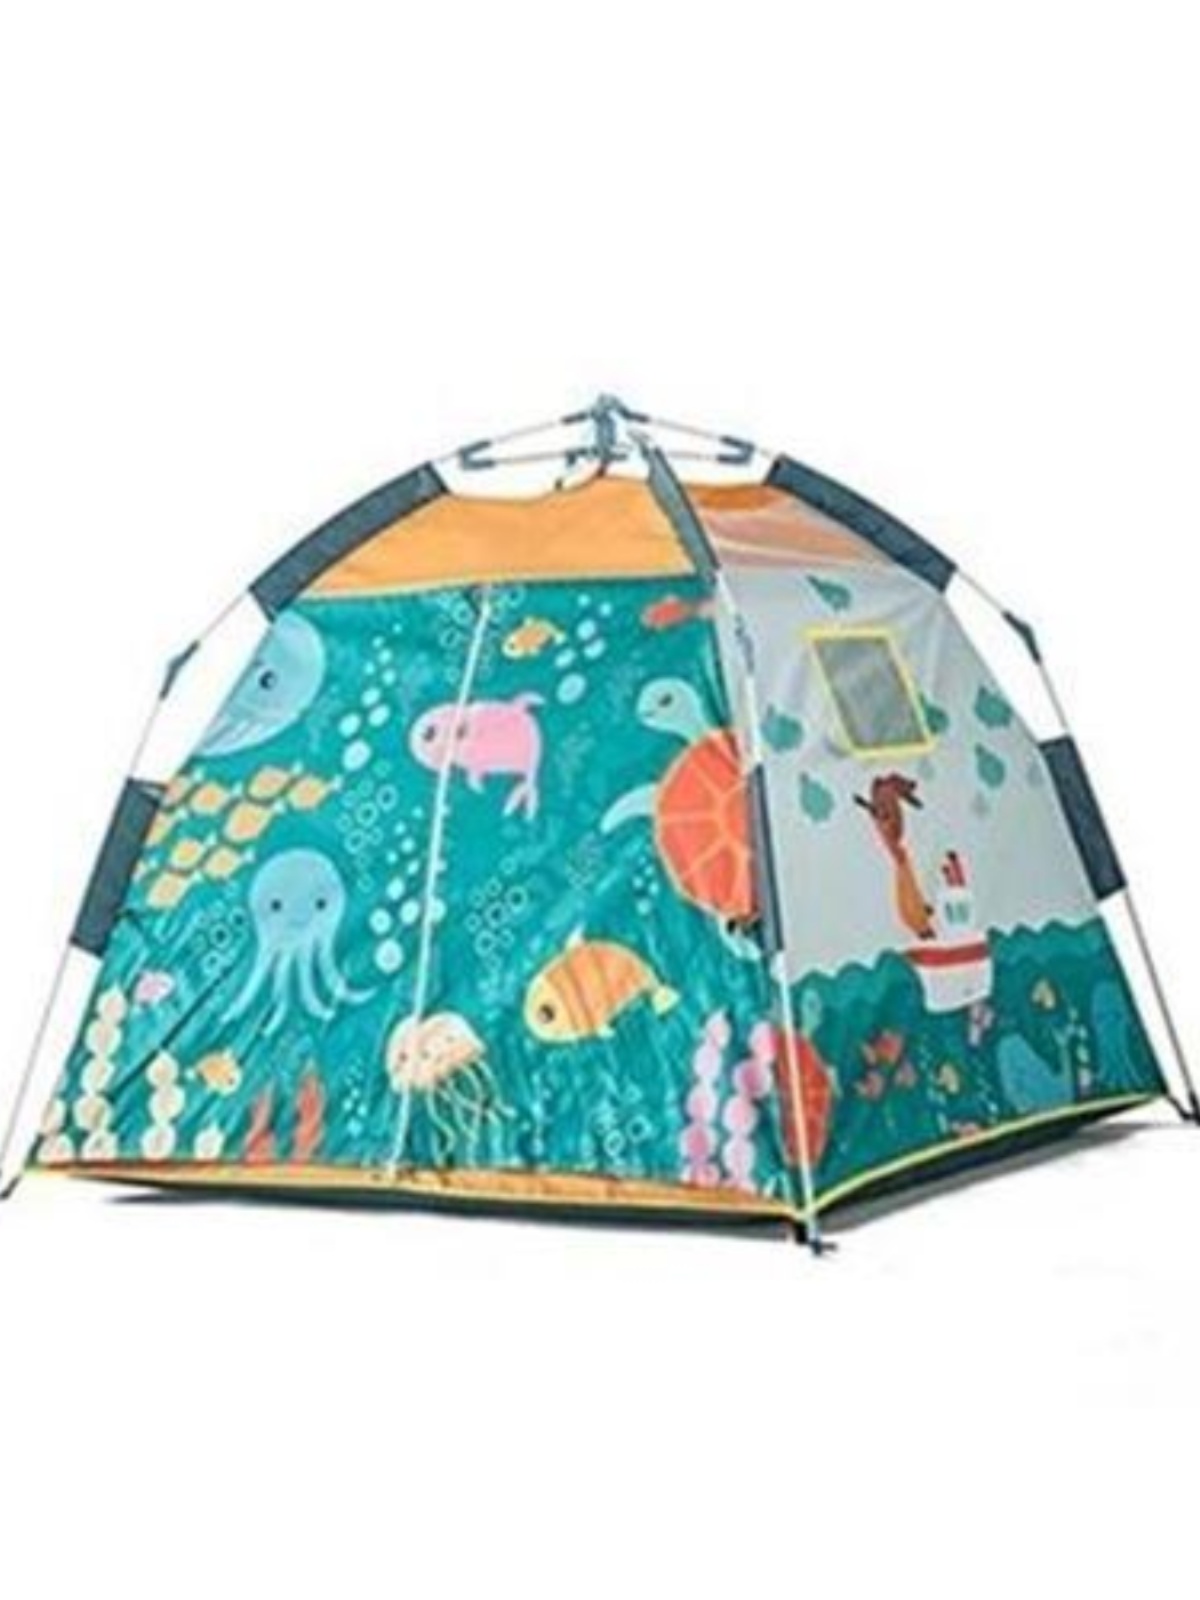 创意小屋炊厅野客孩n子野餐紫色卧室戏童帐篷游儿屋休闲三角形